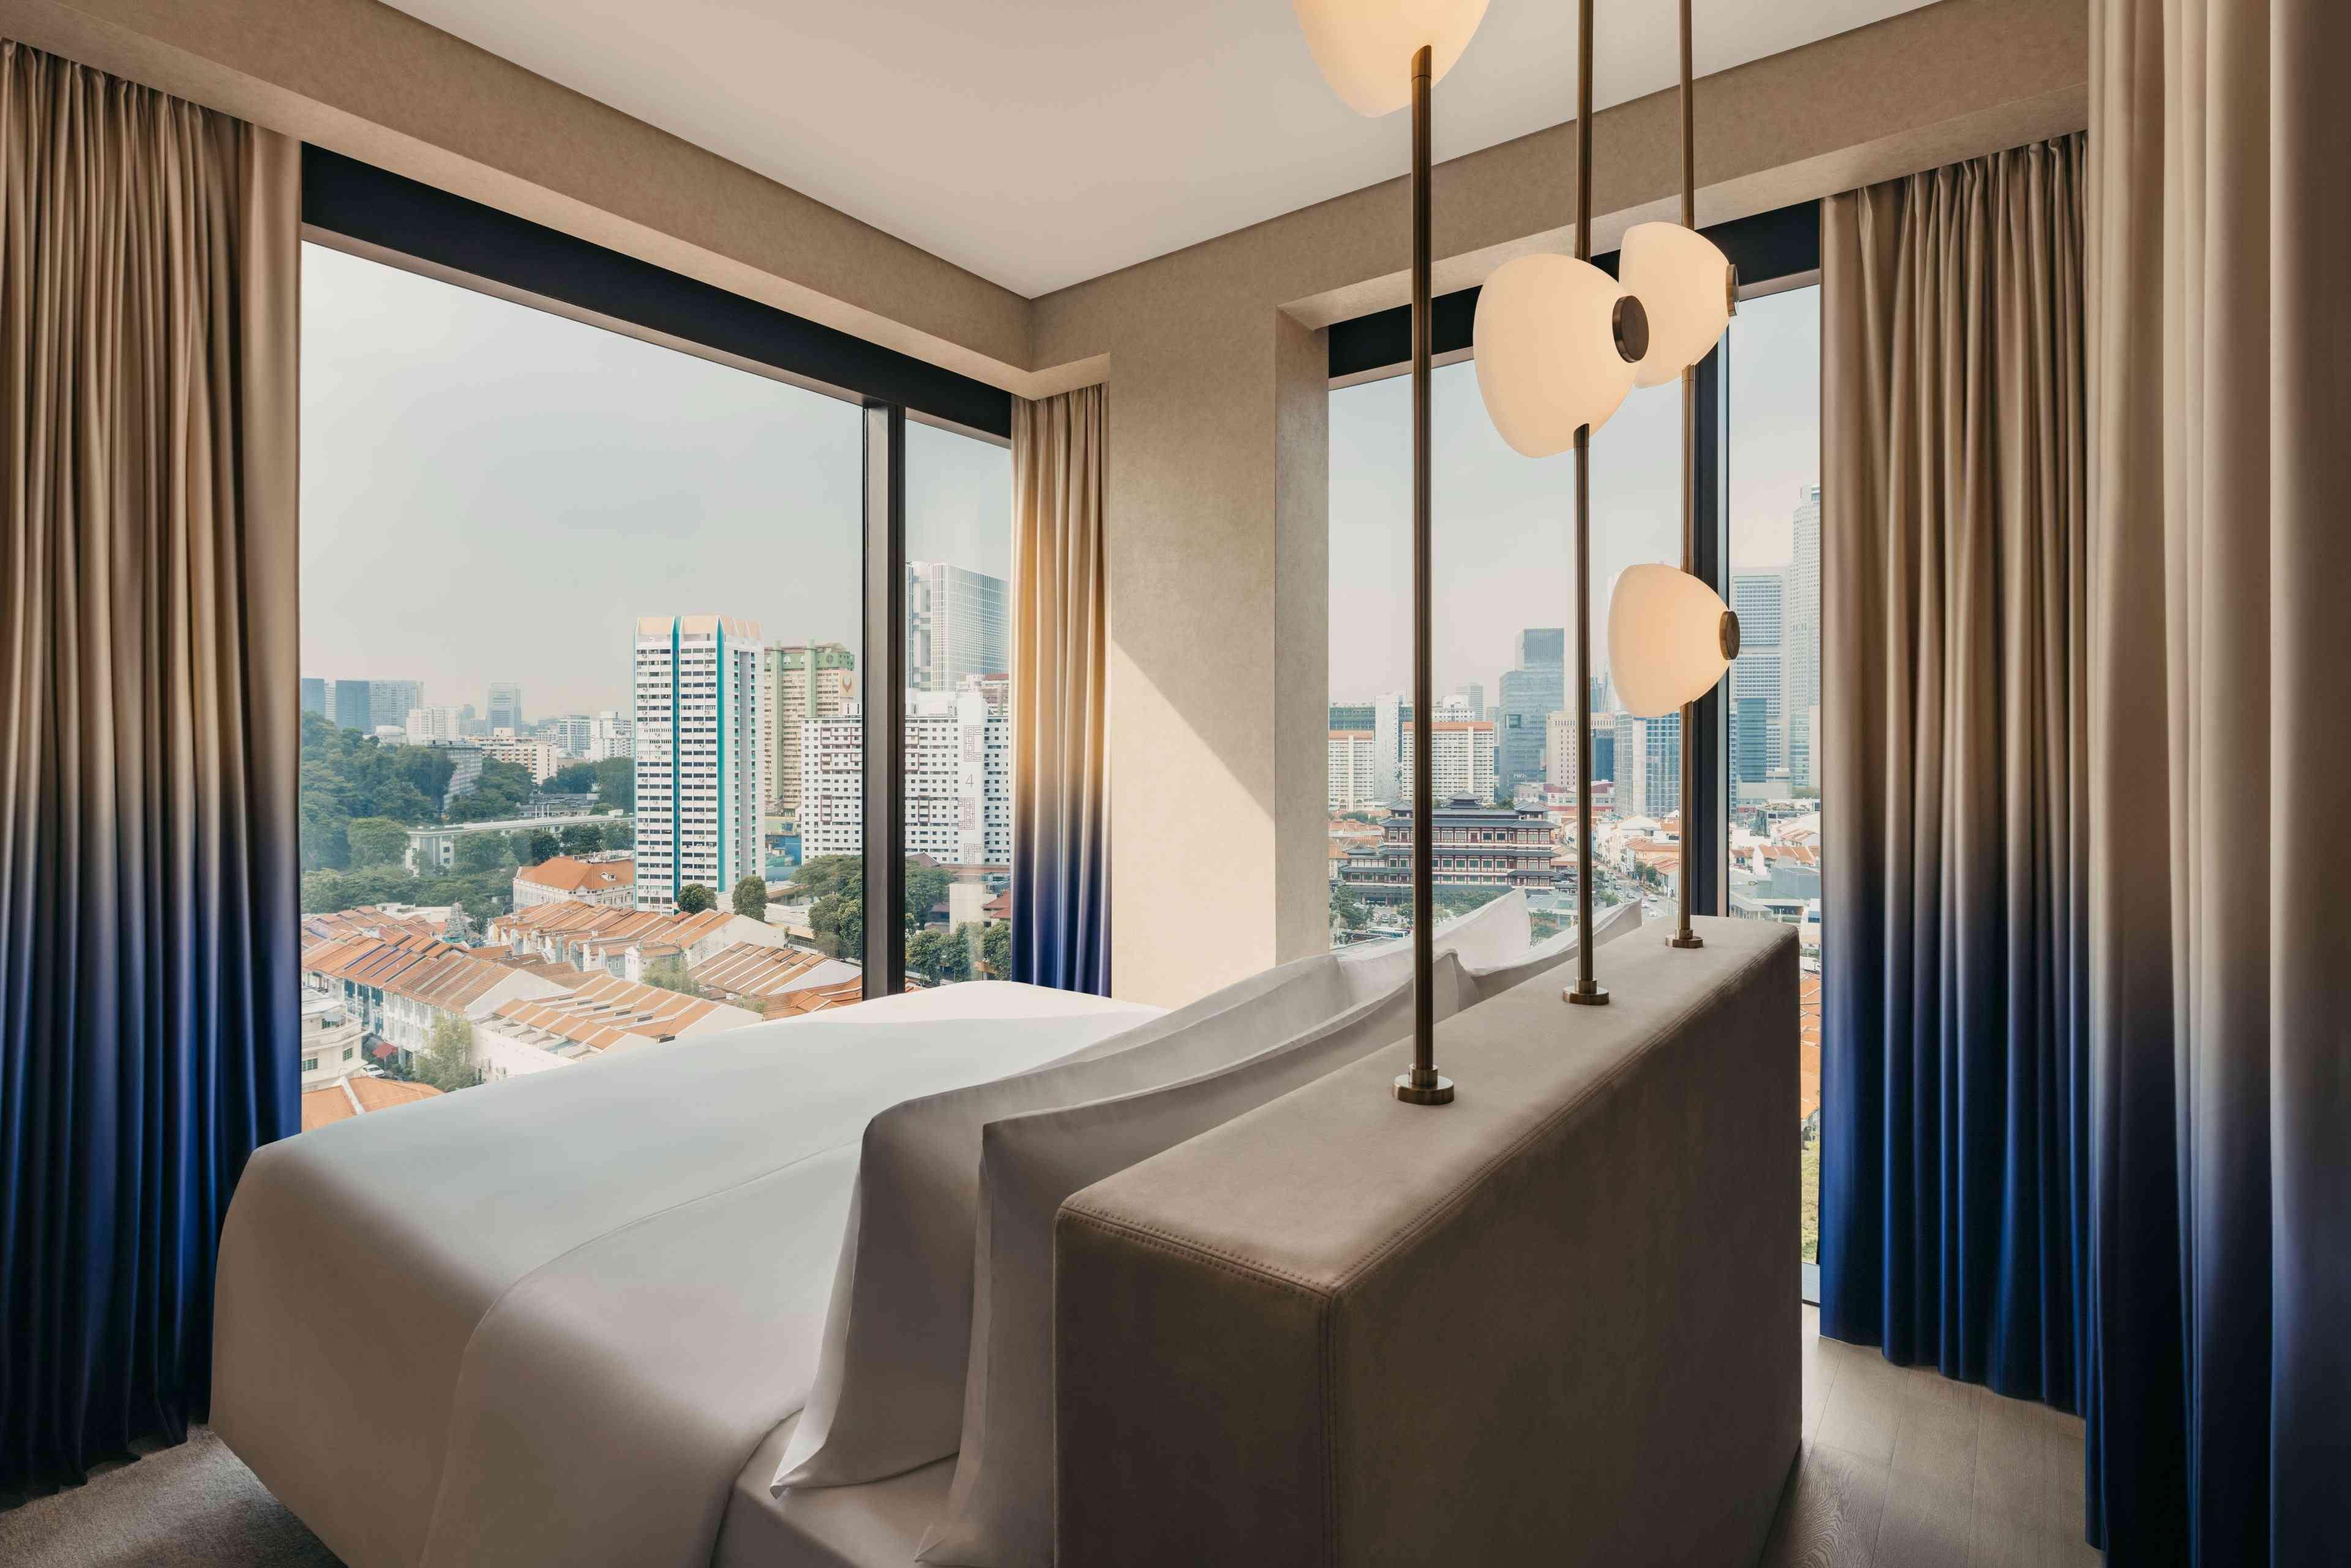 جناح في Mondrian Singapore Duxton به نوافذ ممتدة من الأرض حتى السقف تطل على المدينة. 